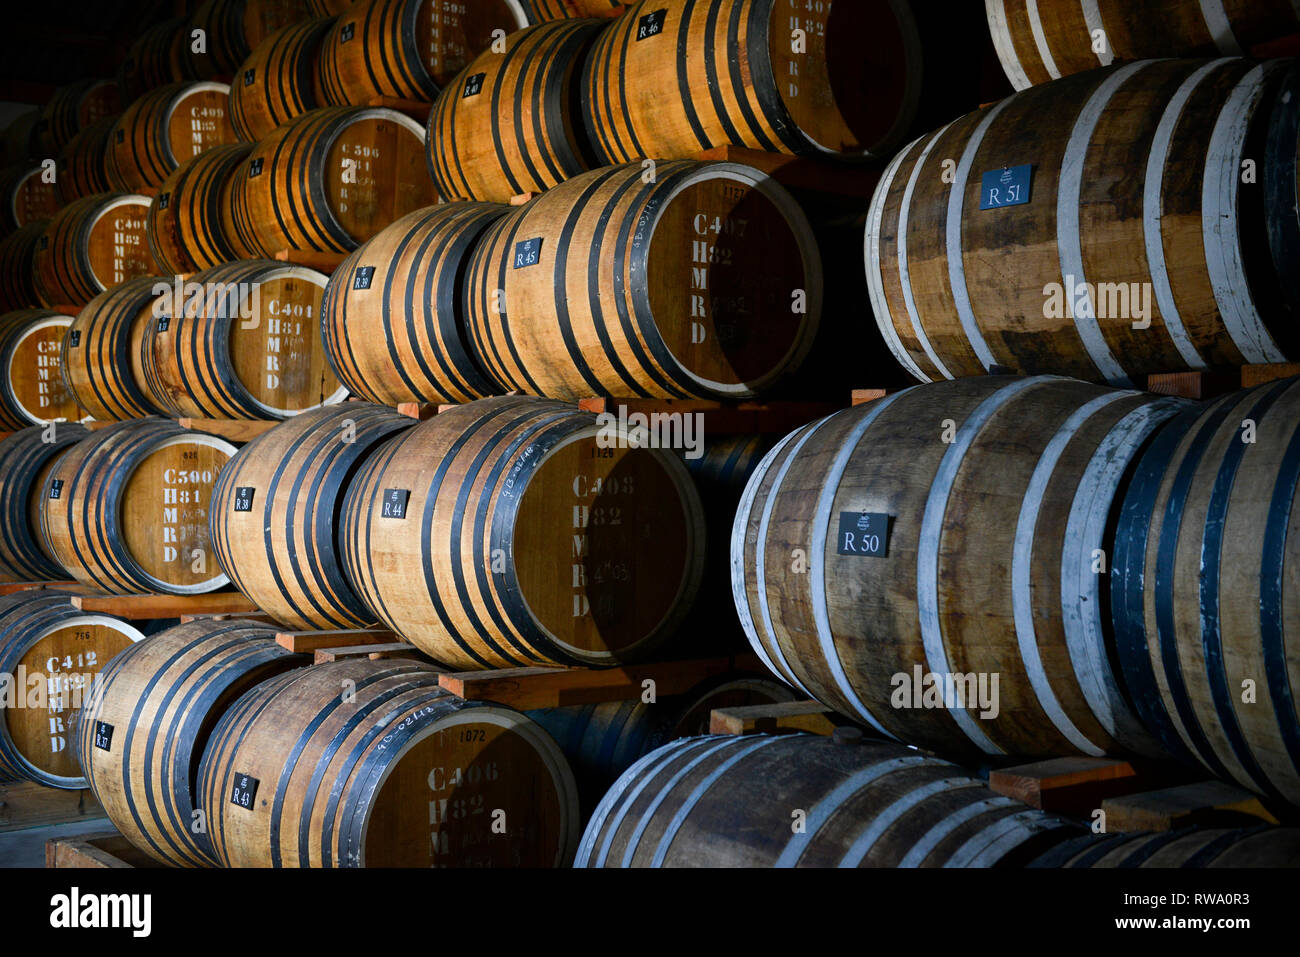 Calvados Boulard (brandy) distillerie à Coquainvilliers (Normandie, nord-ouest de la France). Pays d'Auge Calvados, appellation appartenant à l'esprit Fr Banque D'Images